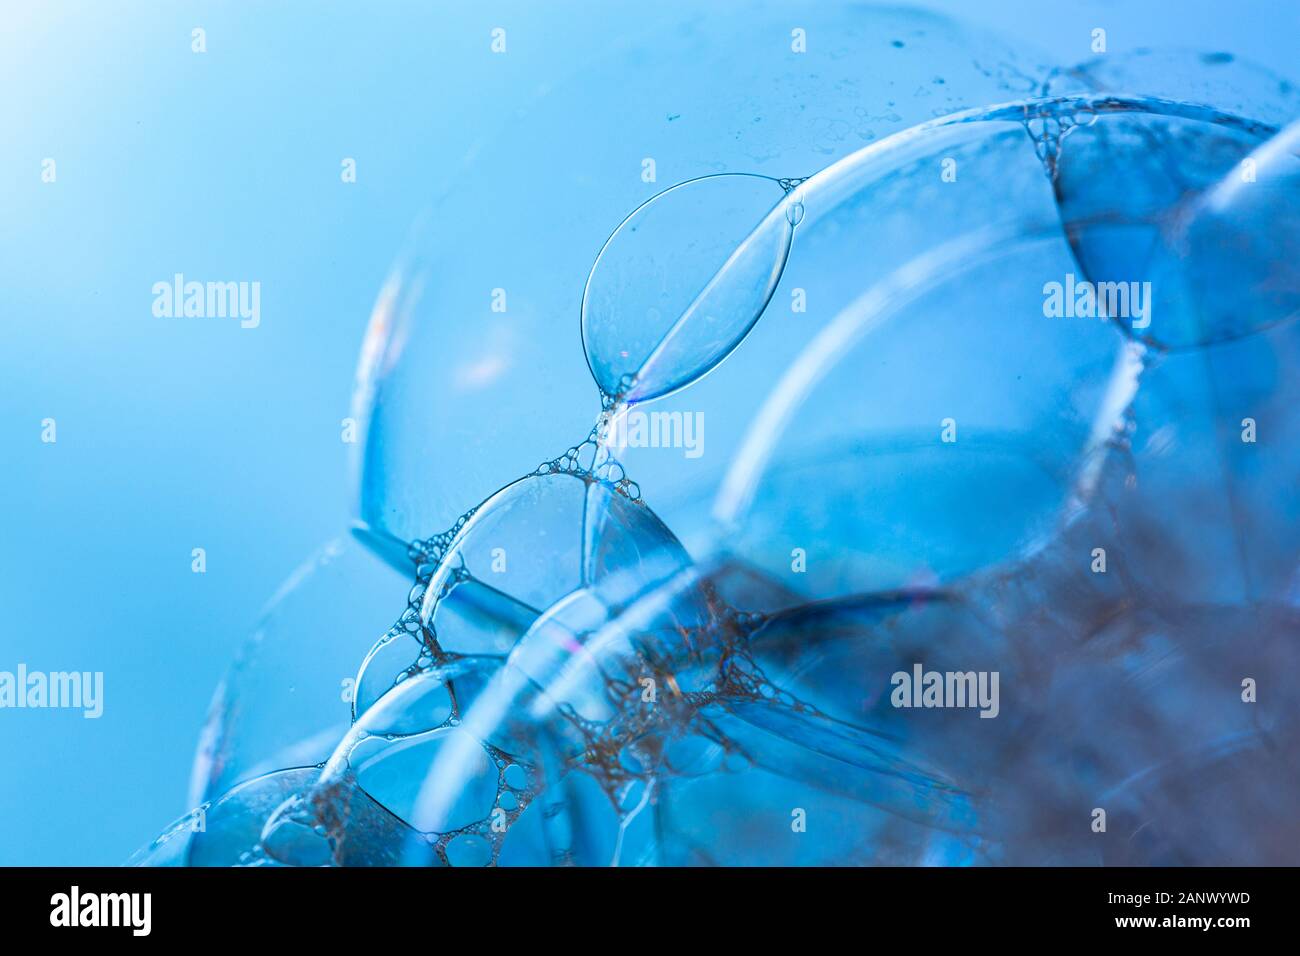 Kreative Zusammenfassung Hintergrund der Kette von Bläschen Struktur in hellen Blautönen gemacht Stockfoto